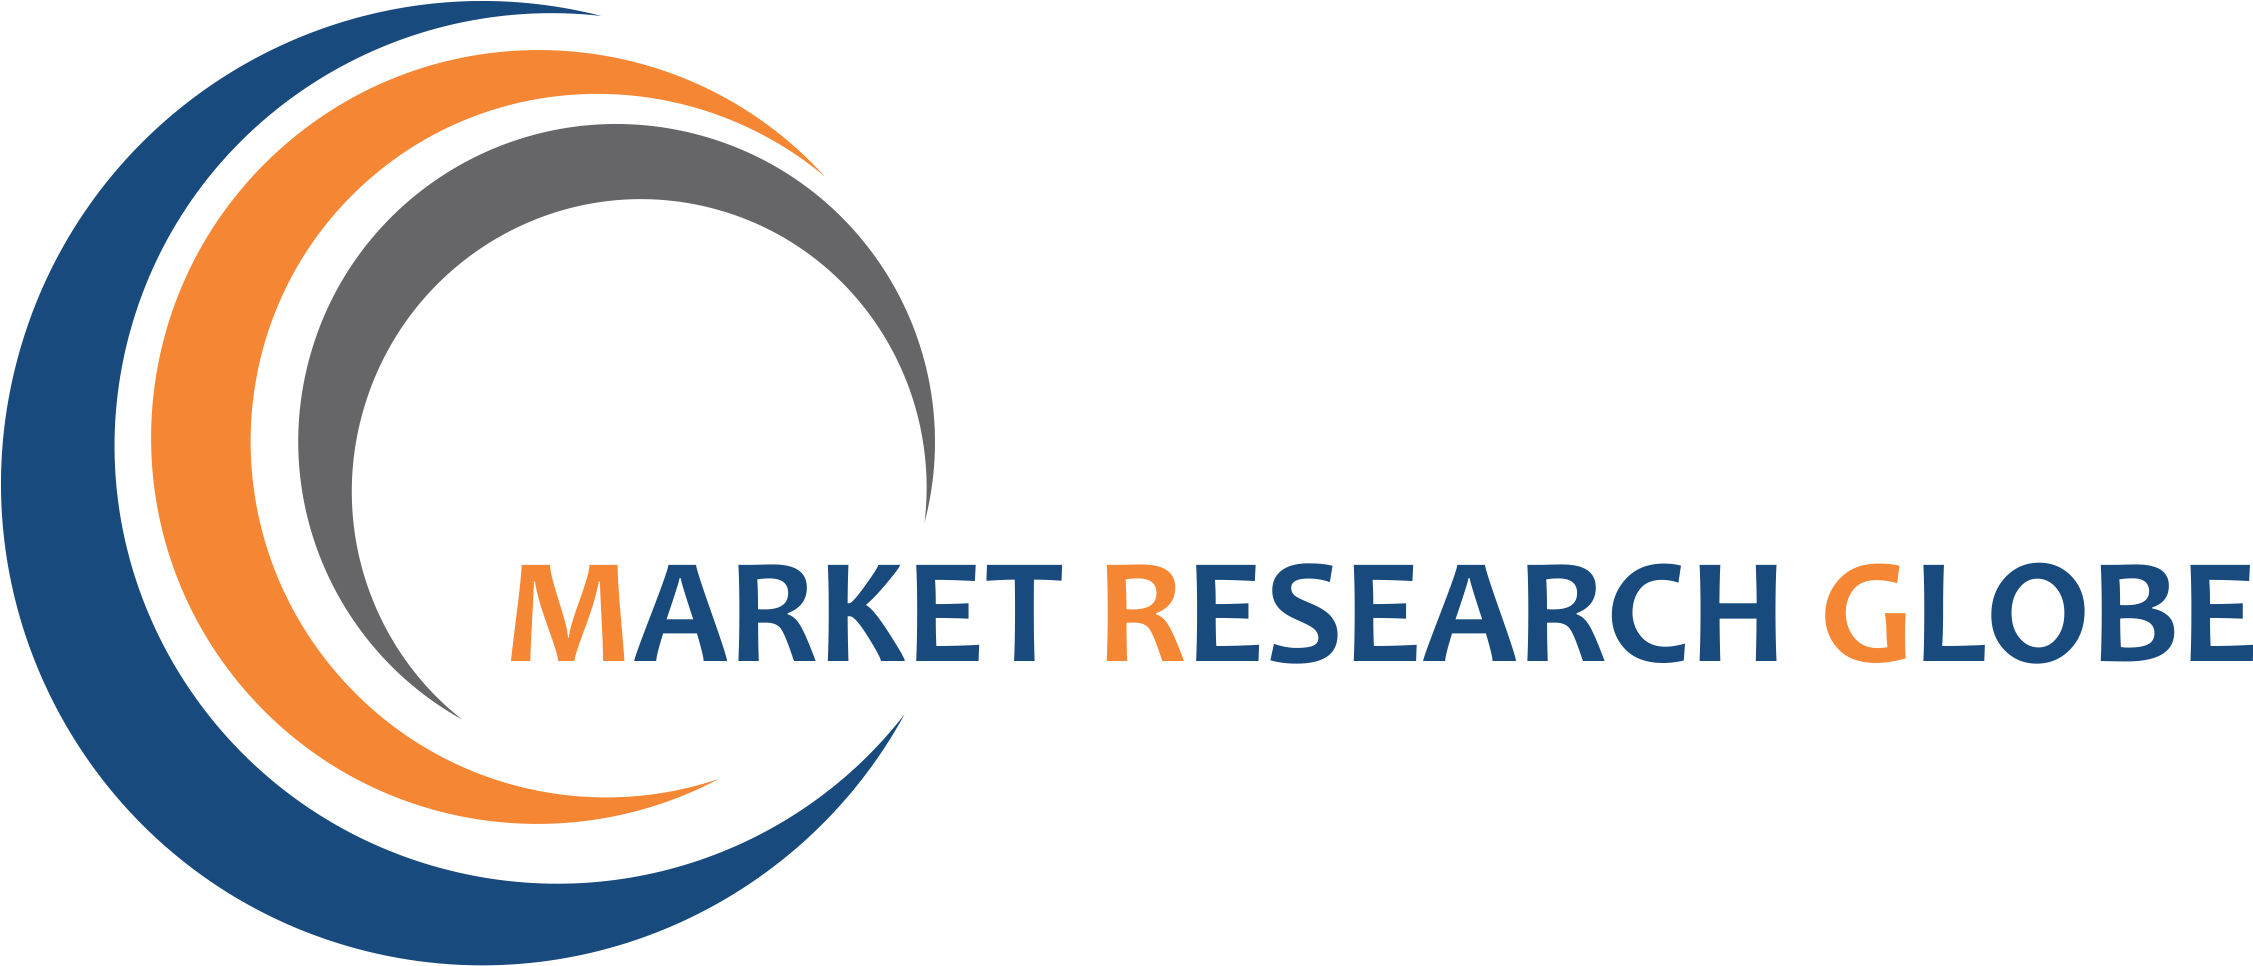 Market Research Globe Logo